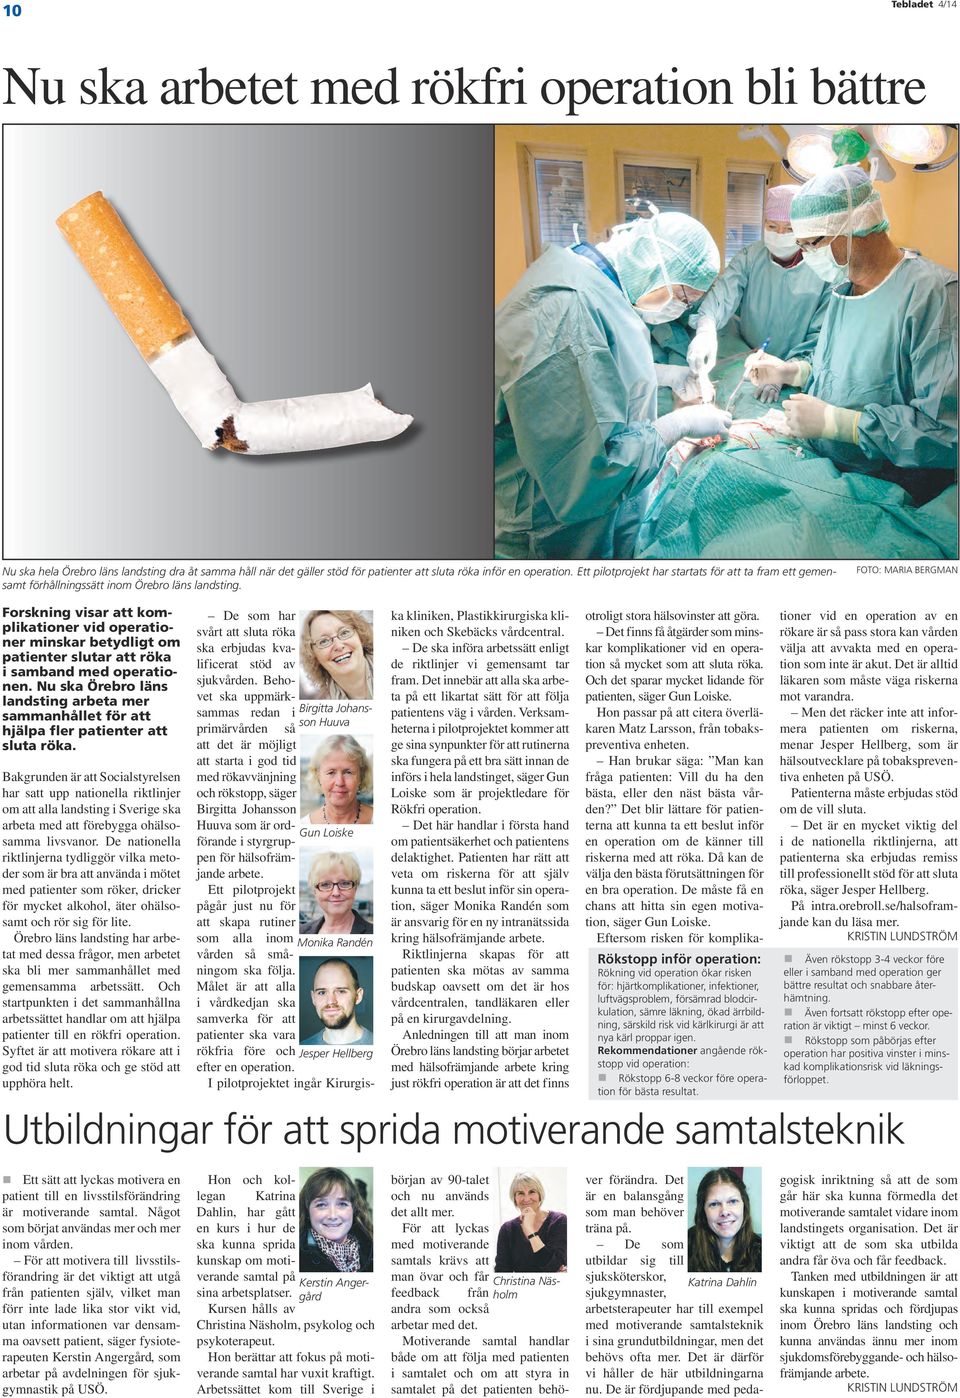 Foto: Maria Bergman Forskning visar att komplikationer vid operationer minskar betydligt om patienter slutar att röka i samband med operationen.